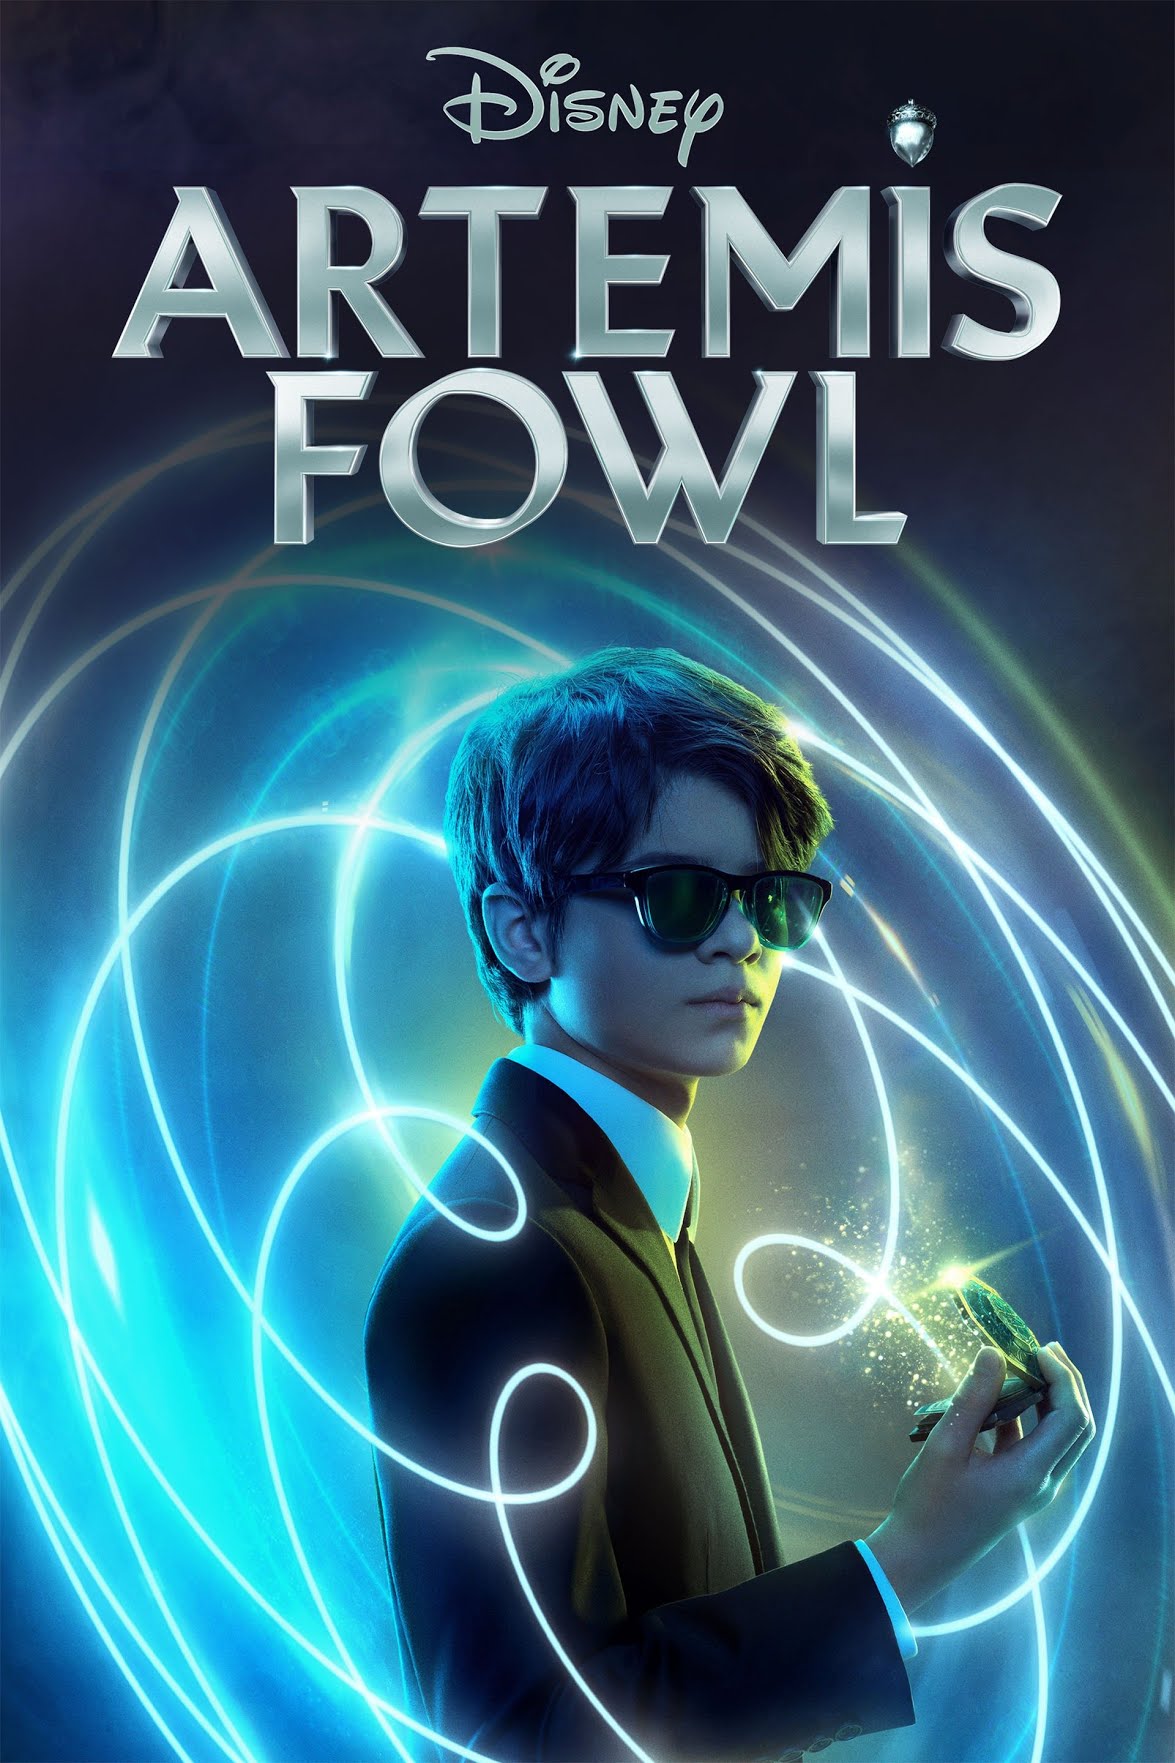 Artemis Fowl (film) - Wikipedia